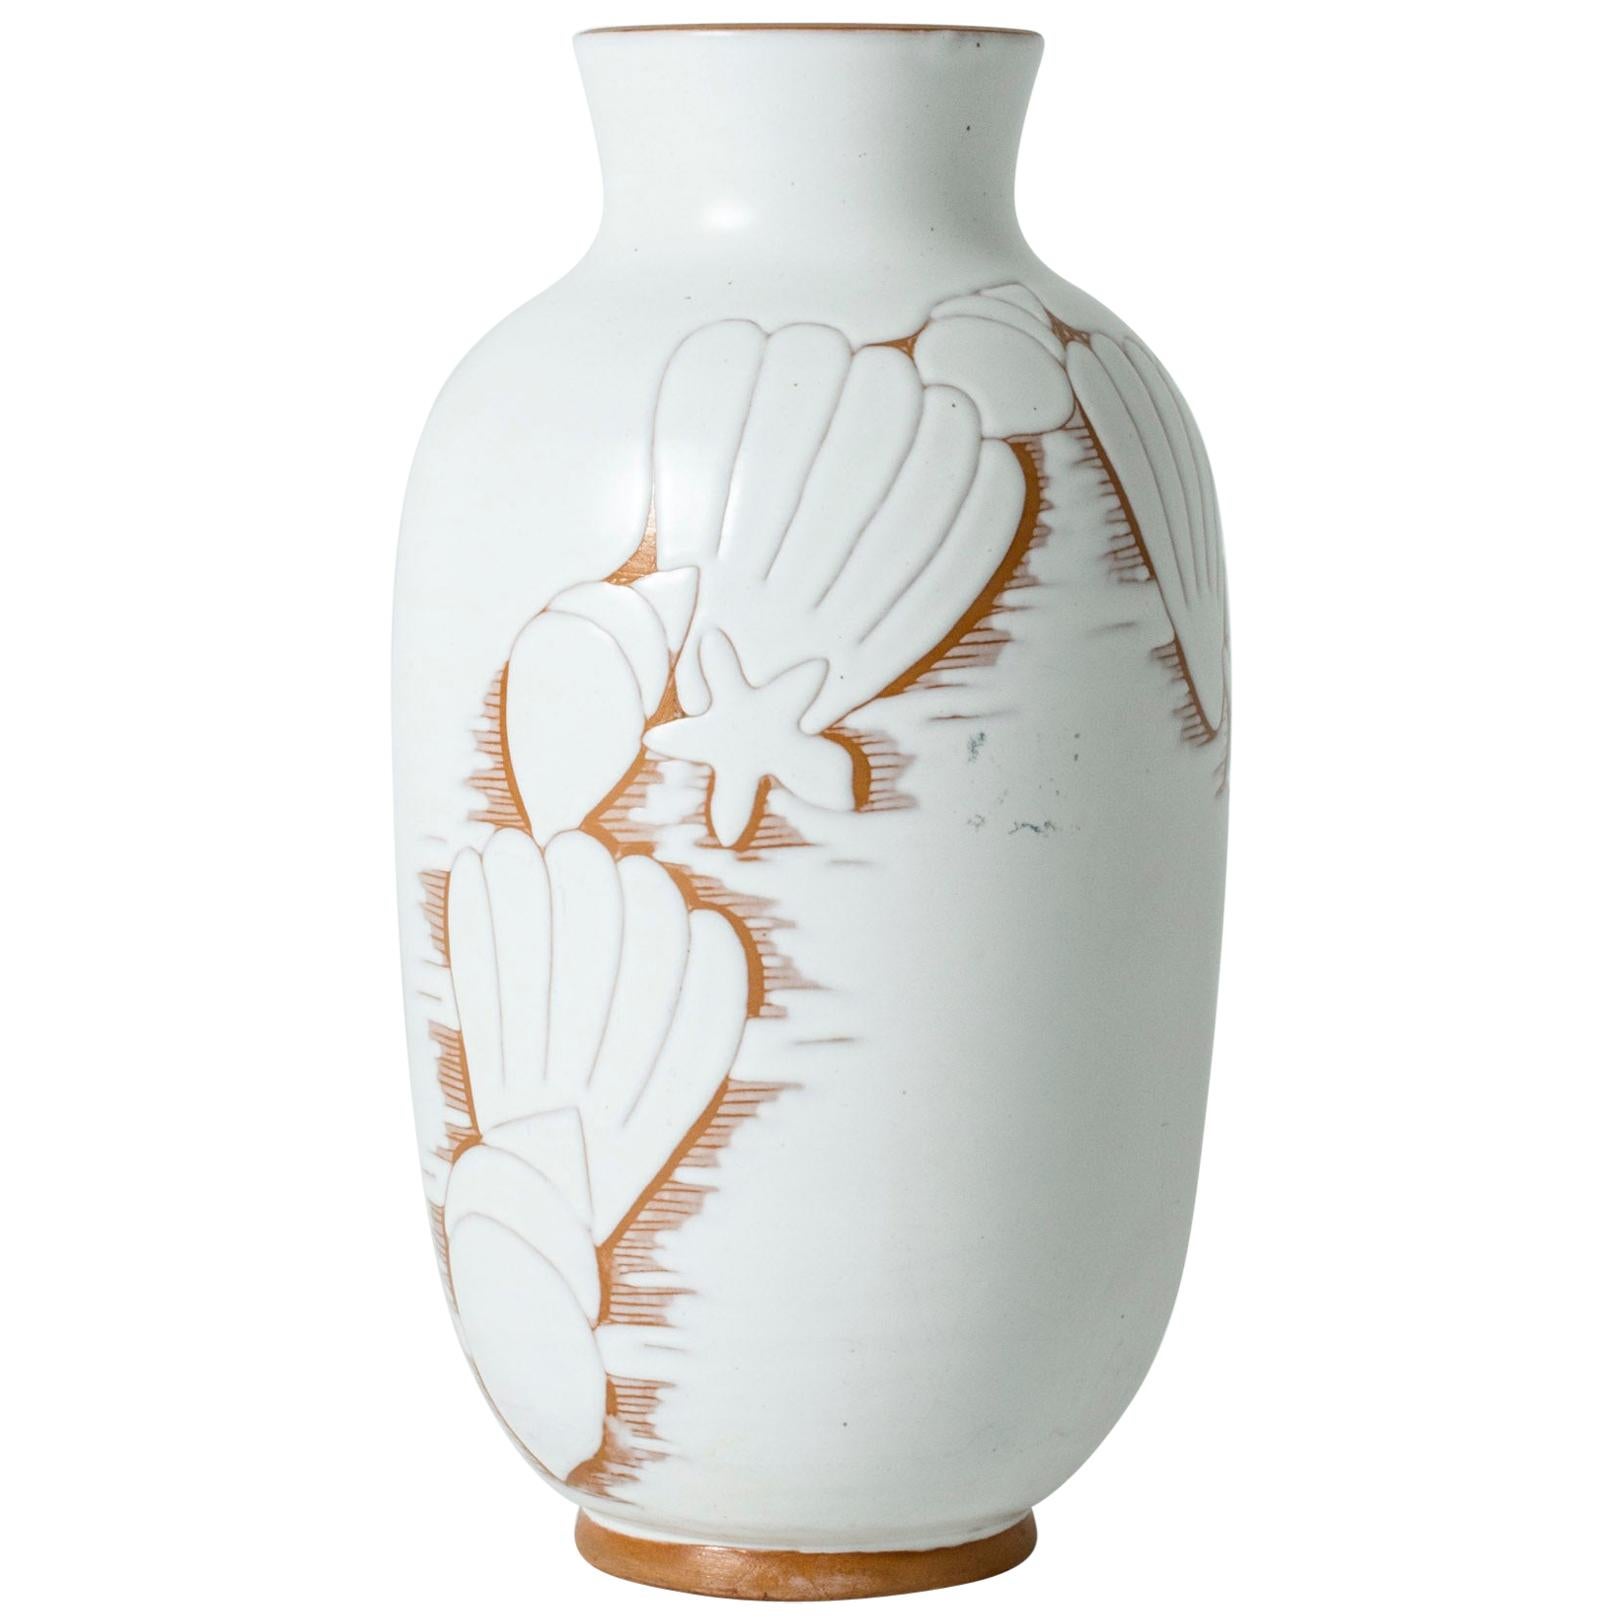 Large Swedish ceramic earthenware vase by Anna-Lisa Thomson for Upsala-Ekeby